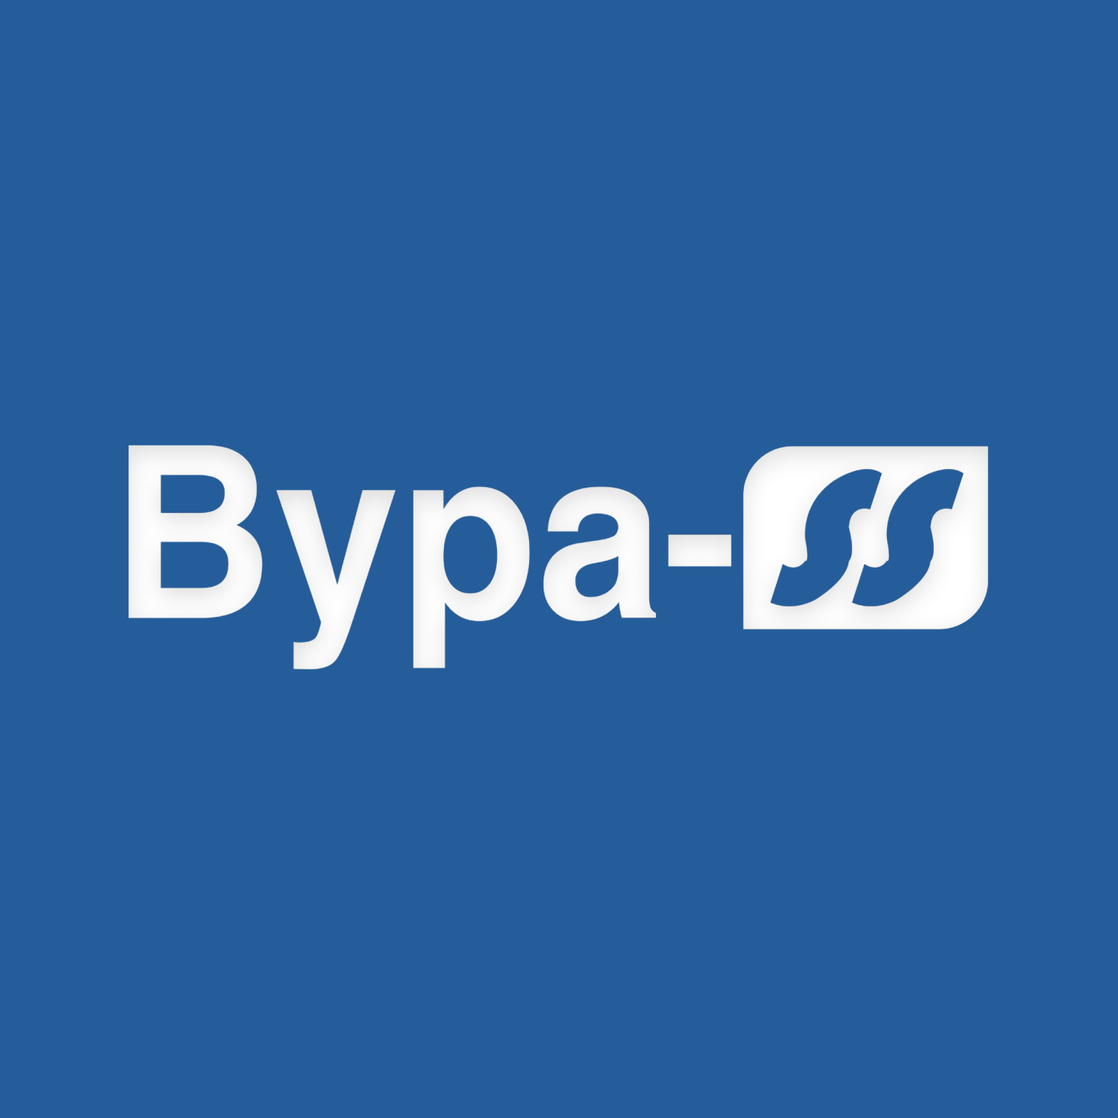 Bypass Ltd.